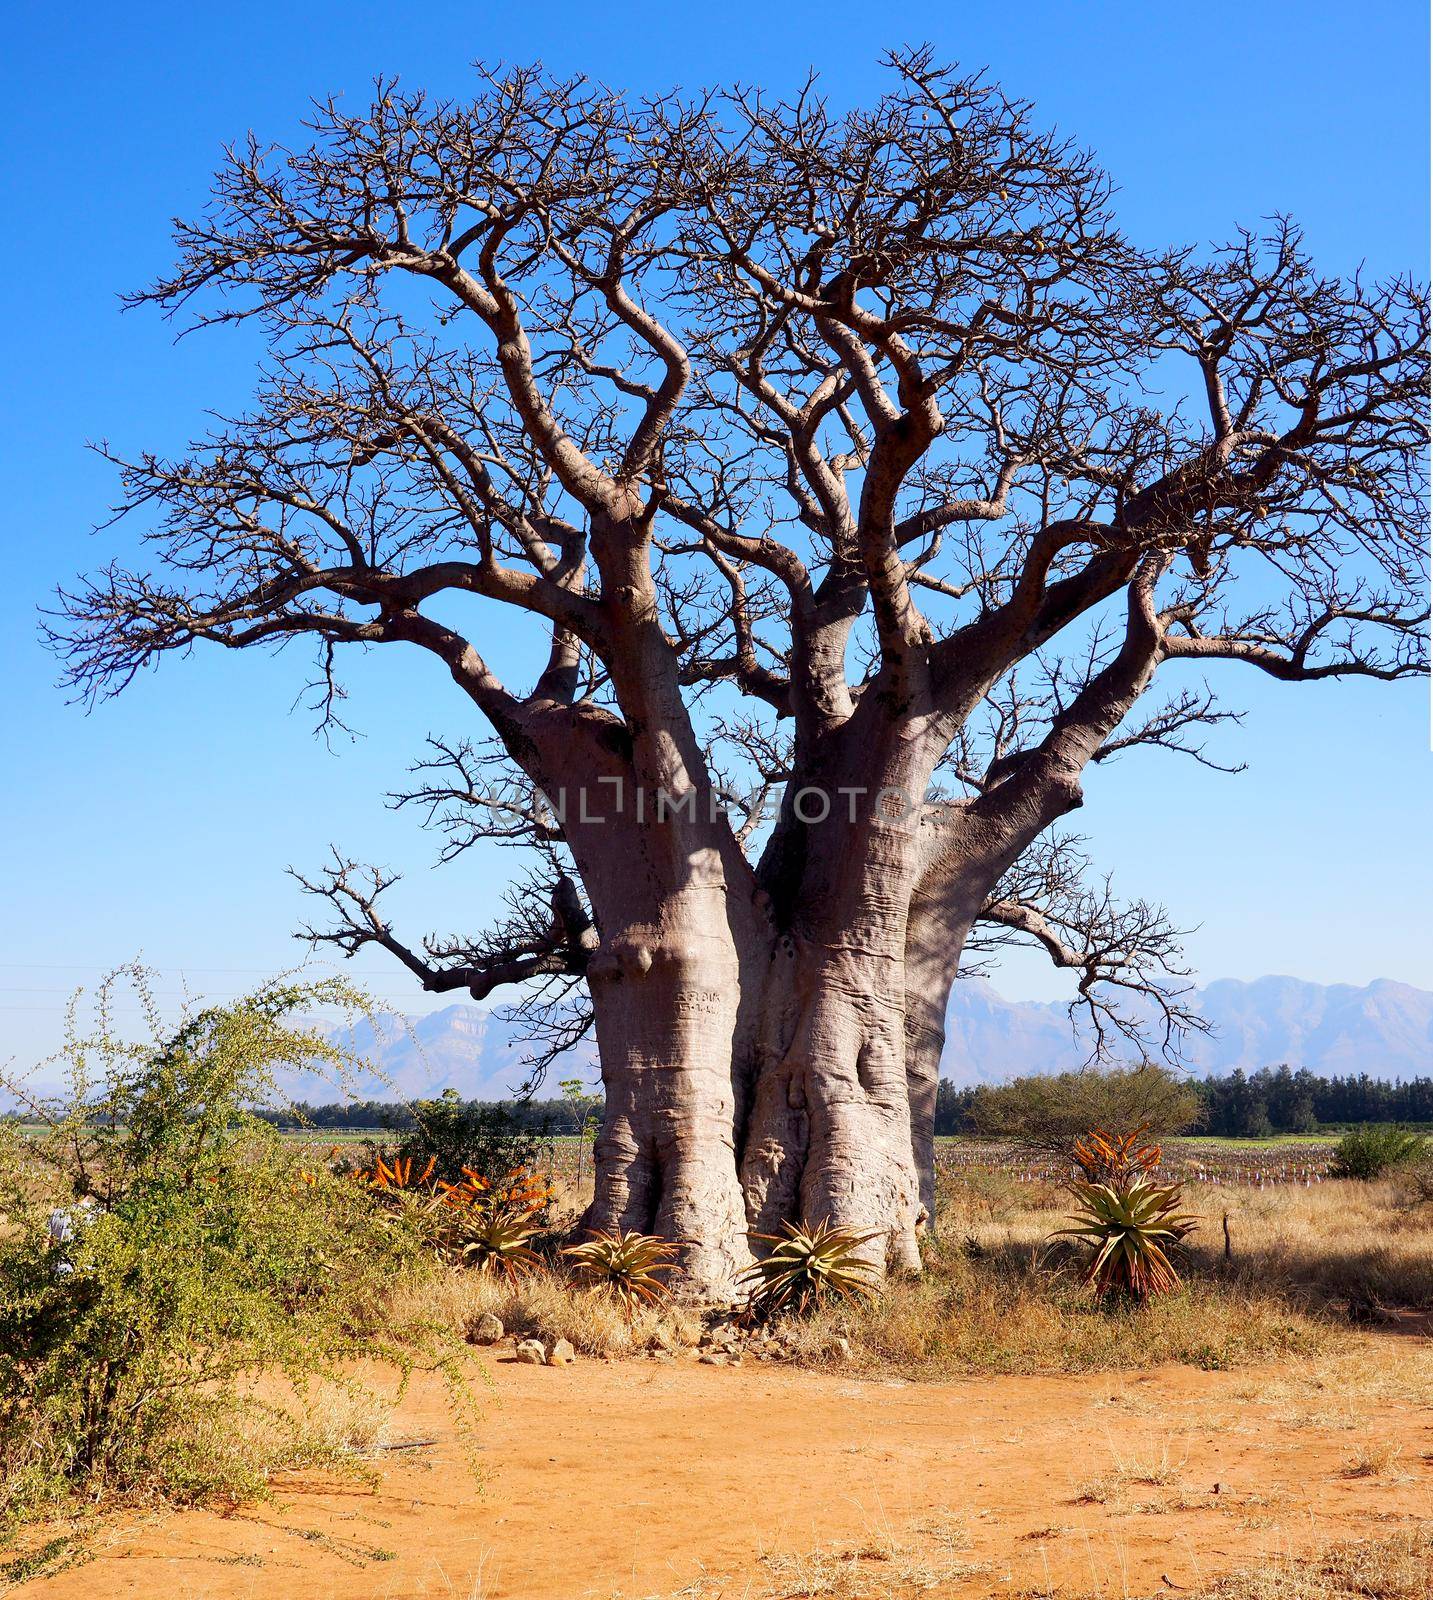 Huge baobab tree in South Africa